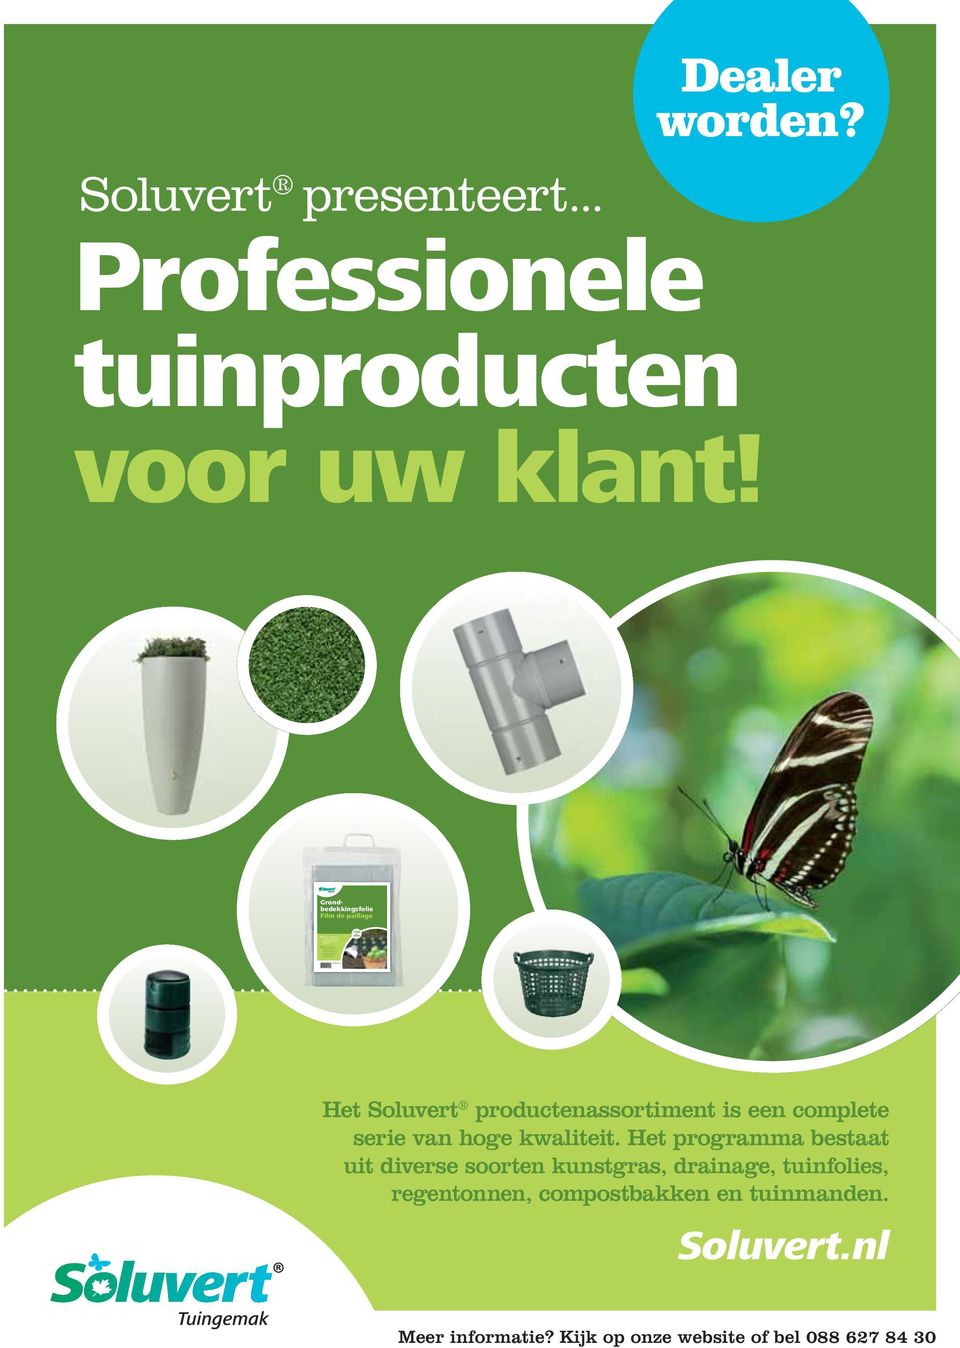 8 711422 171088 Soluvert.nl 1,2m Soluvert presenteert... Dealer worden? Professionele tuinproducten voor uw klant!